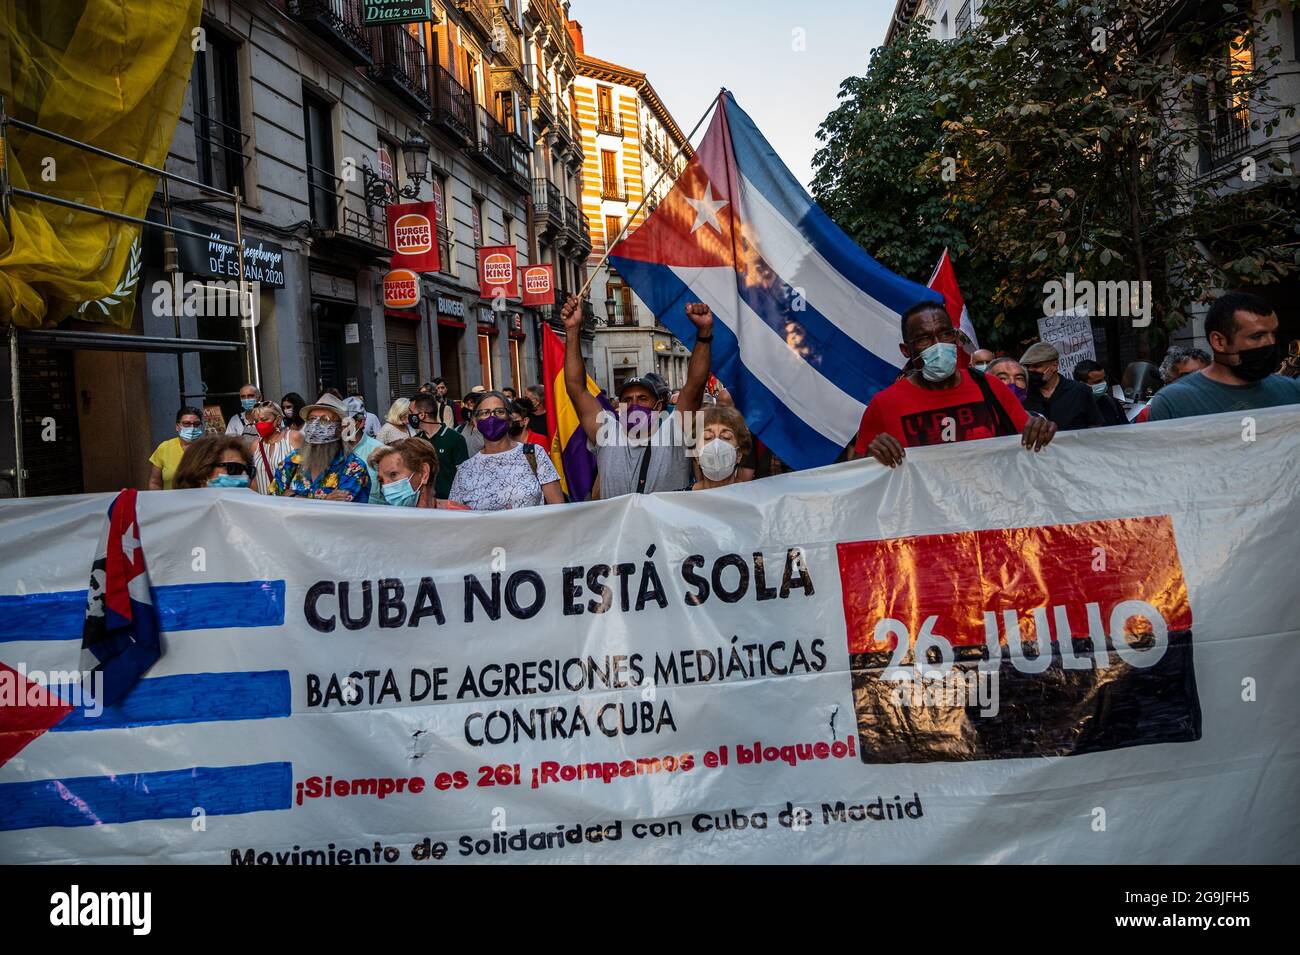 Madrid, Spagna. 26 luglio 2021. Manifestanti con bandiere e cartelli durante una manifestazione contro l’embargo economico statunitense su Cuba, in coincidenza con il 26 luglio, giorno in cui la rivoluzione cubana è iniziata nel 1953, 68 anni fa. Credit: Marcos del Mazo/Alamy Live News Foto Stock